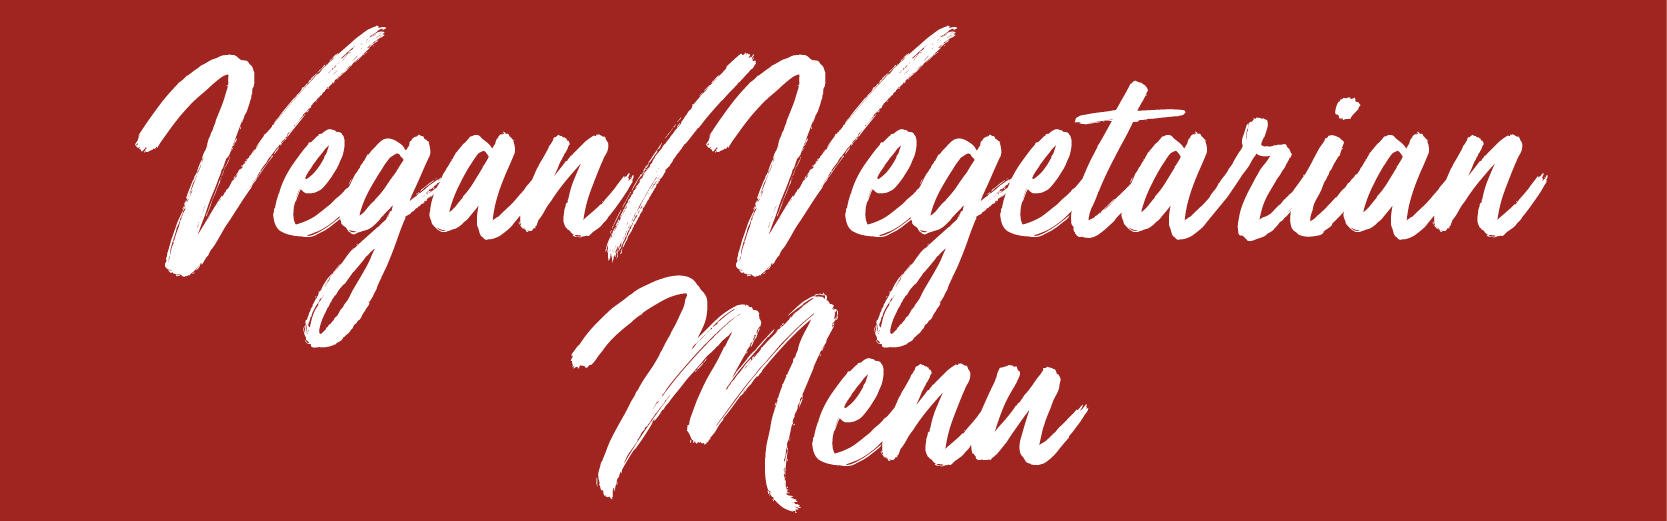 Bacchanal vegan and vegetarian menu